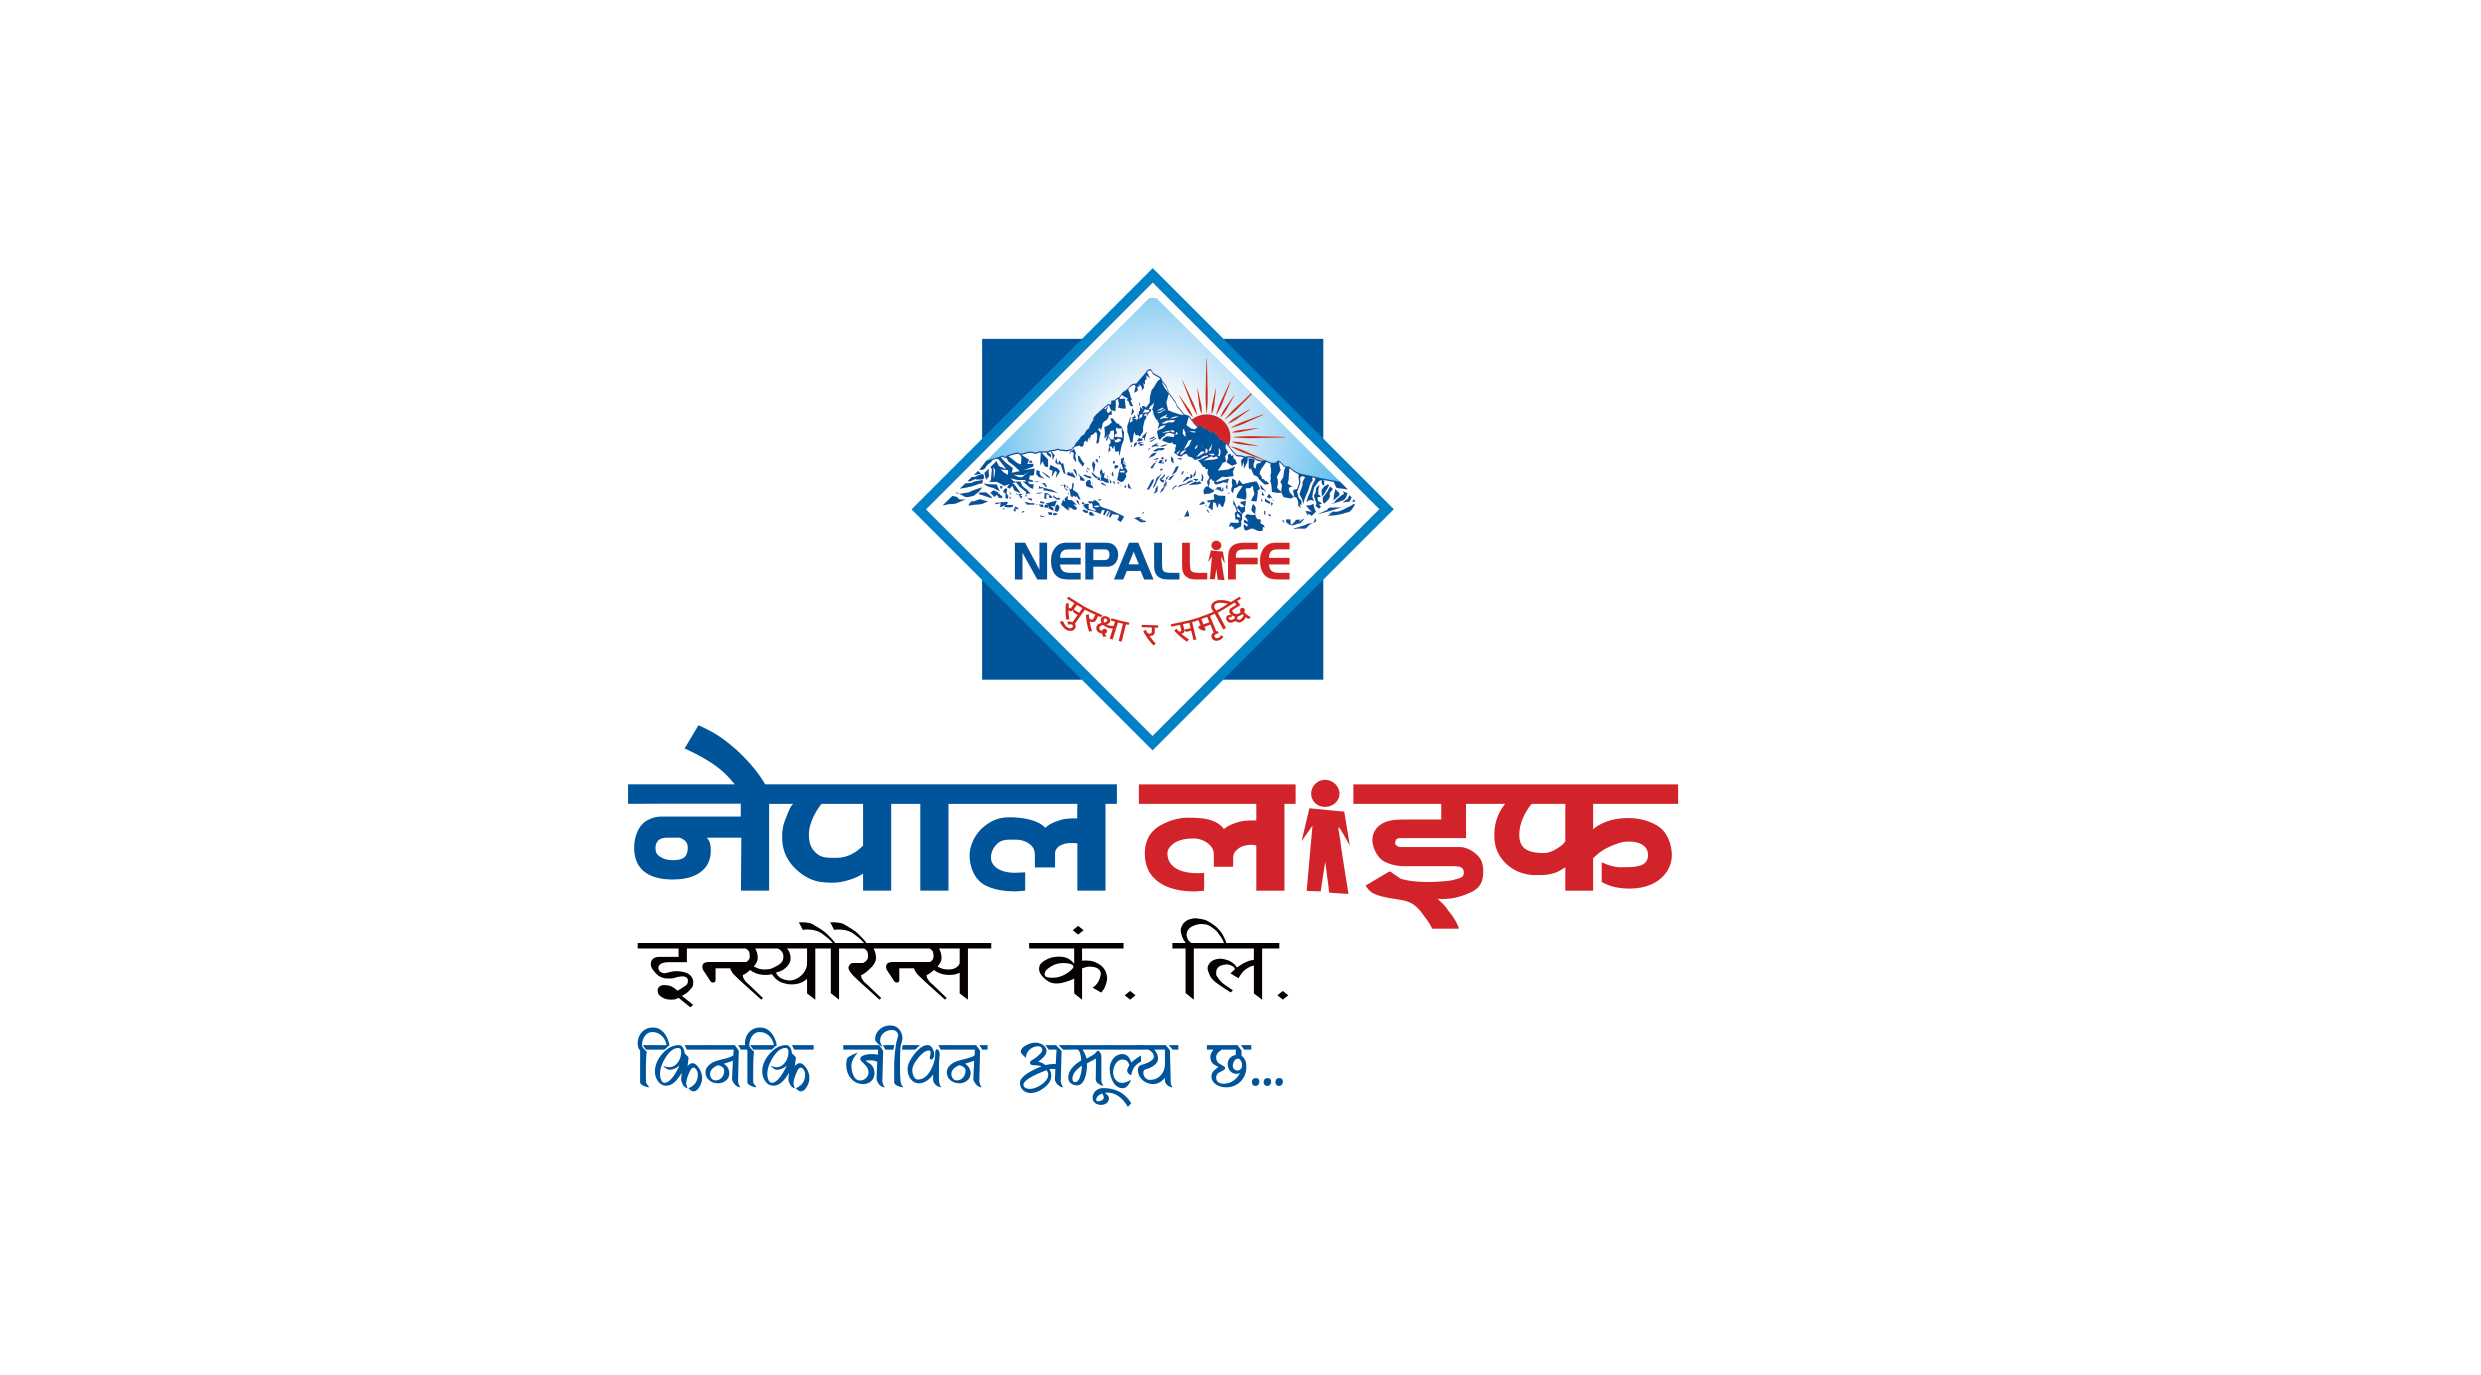 काेराेना काेषमा नेपाल लाइफको १ कराेड सहयाेग